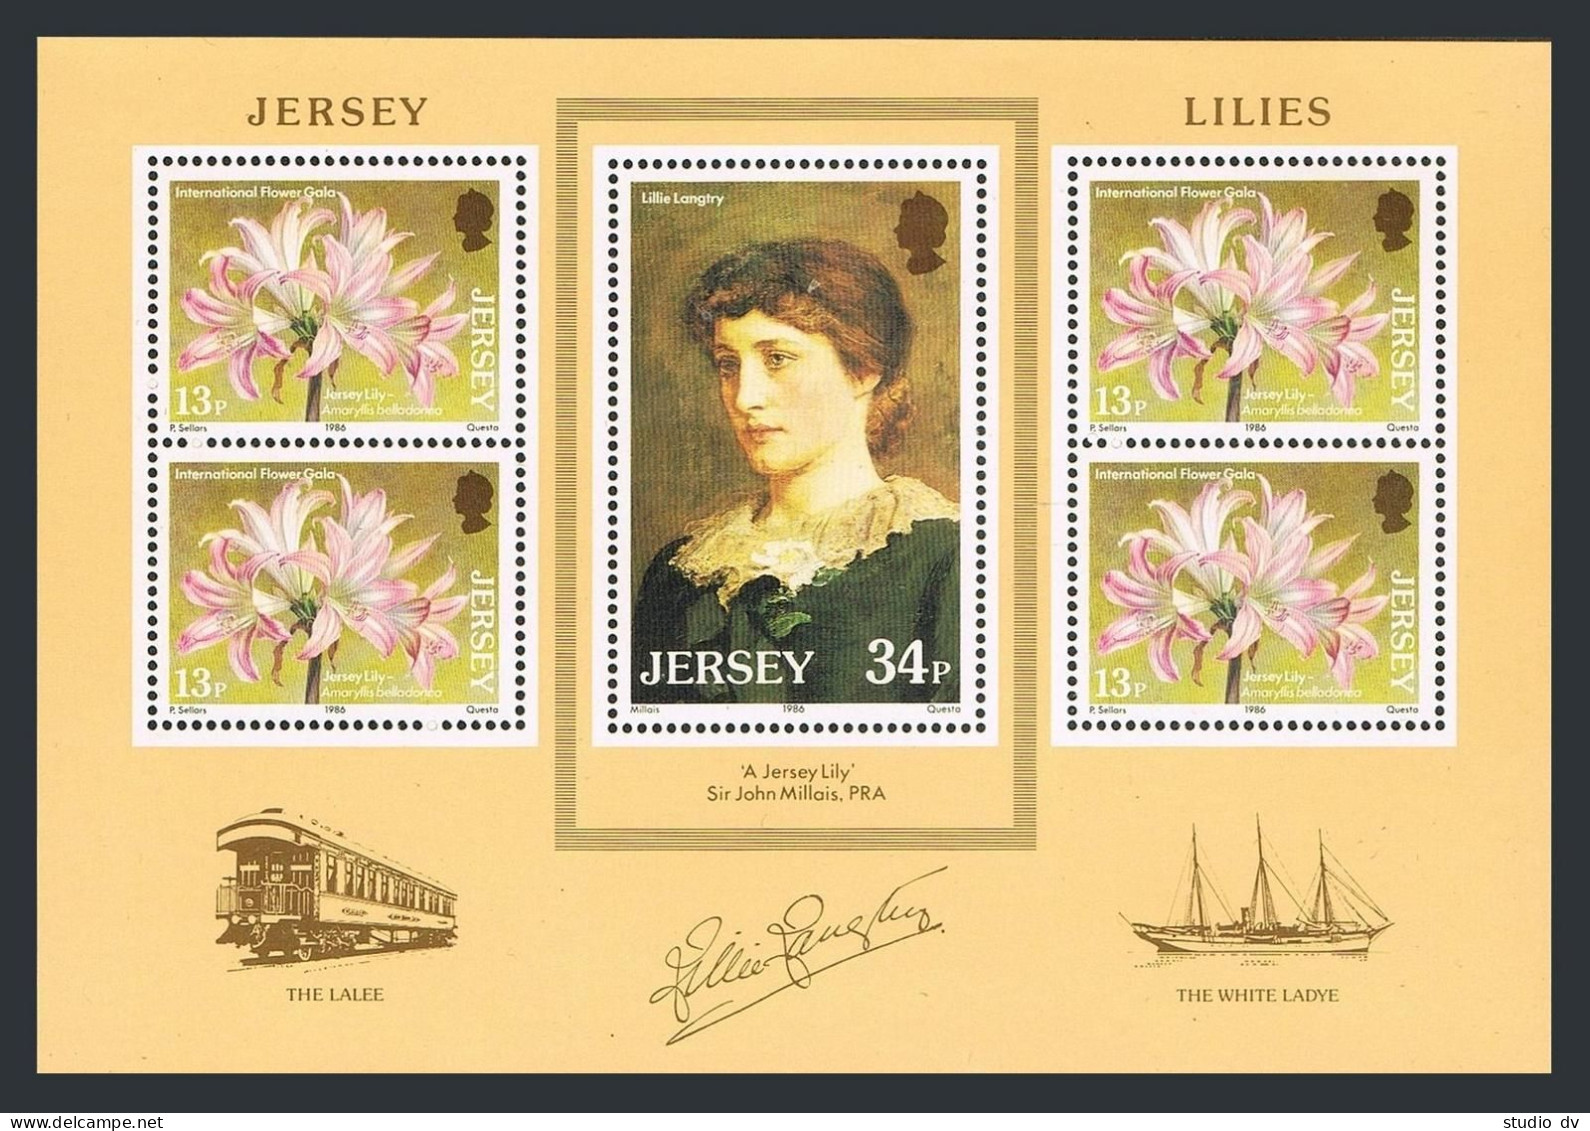 Jersey 391-392,392a, MNH. Mi 372-373,Bl.4. Lily. Lillie Langtry.By Millais.1986. - Jersey